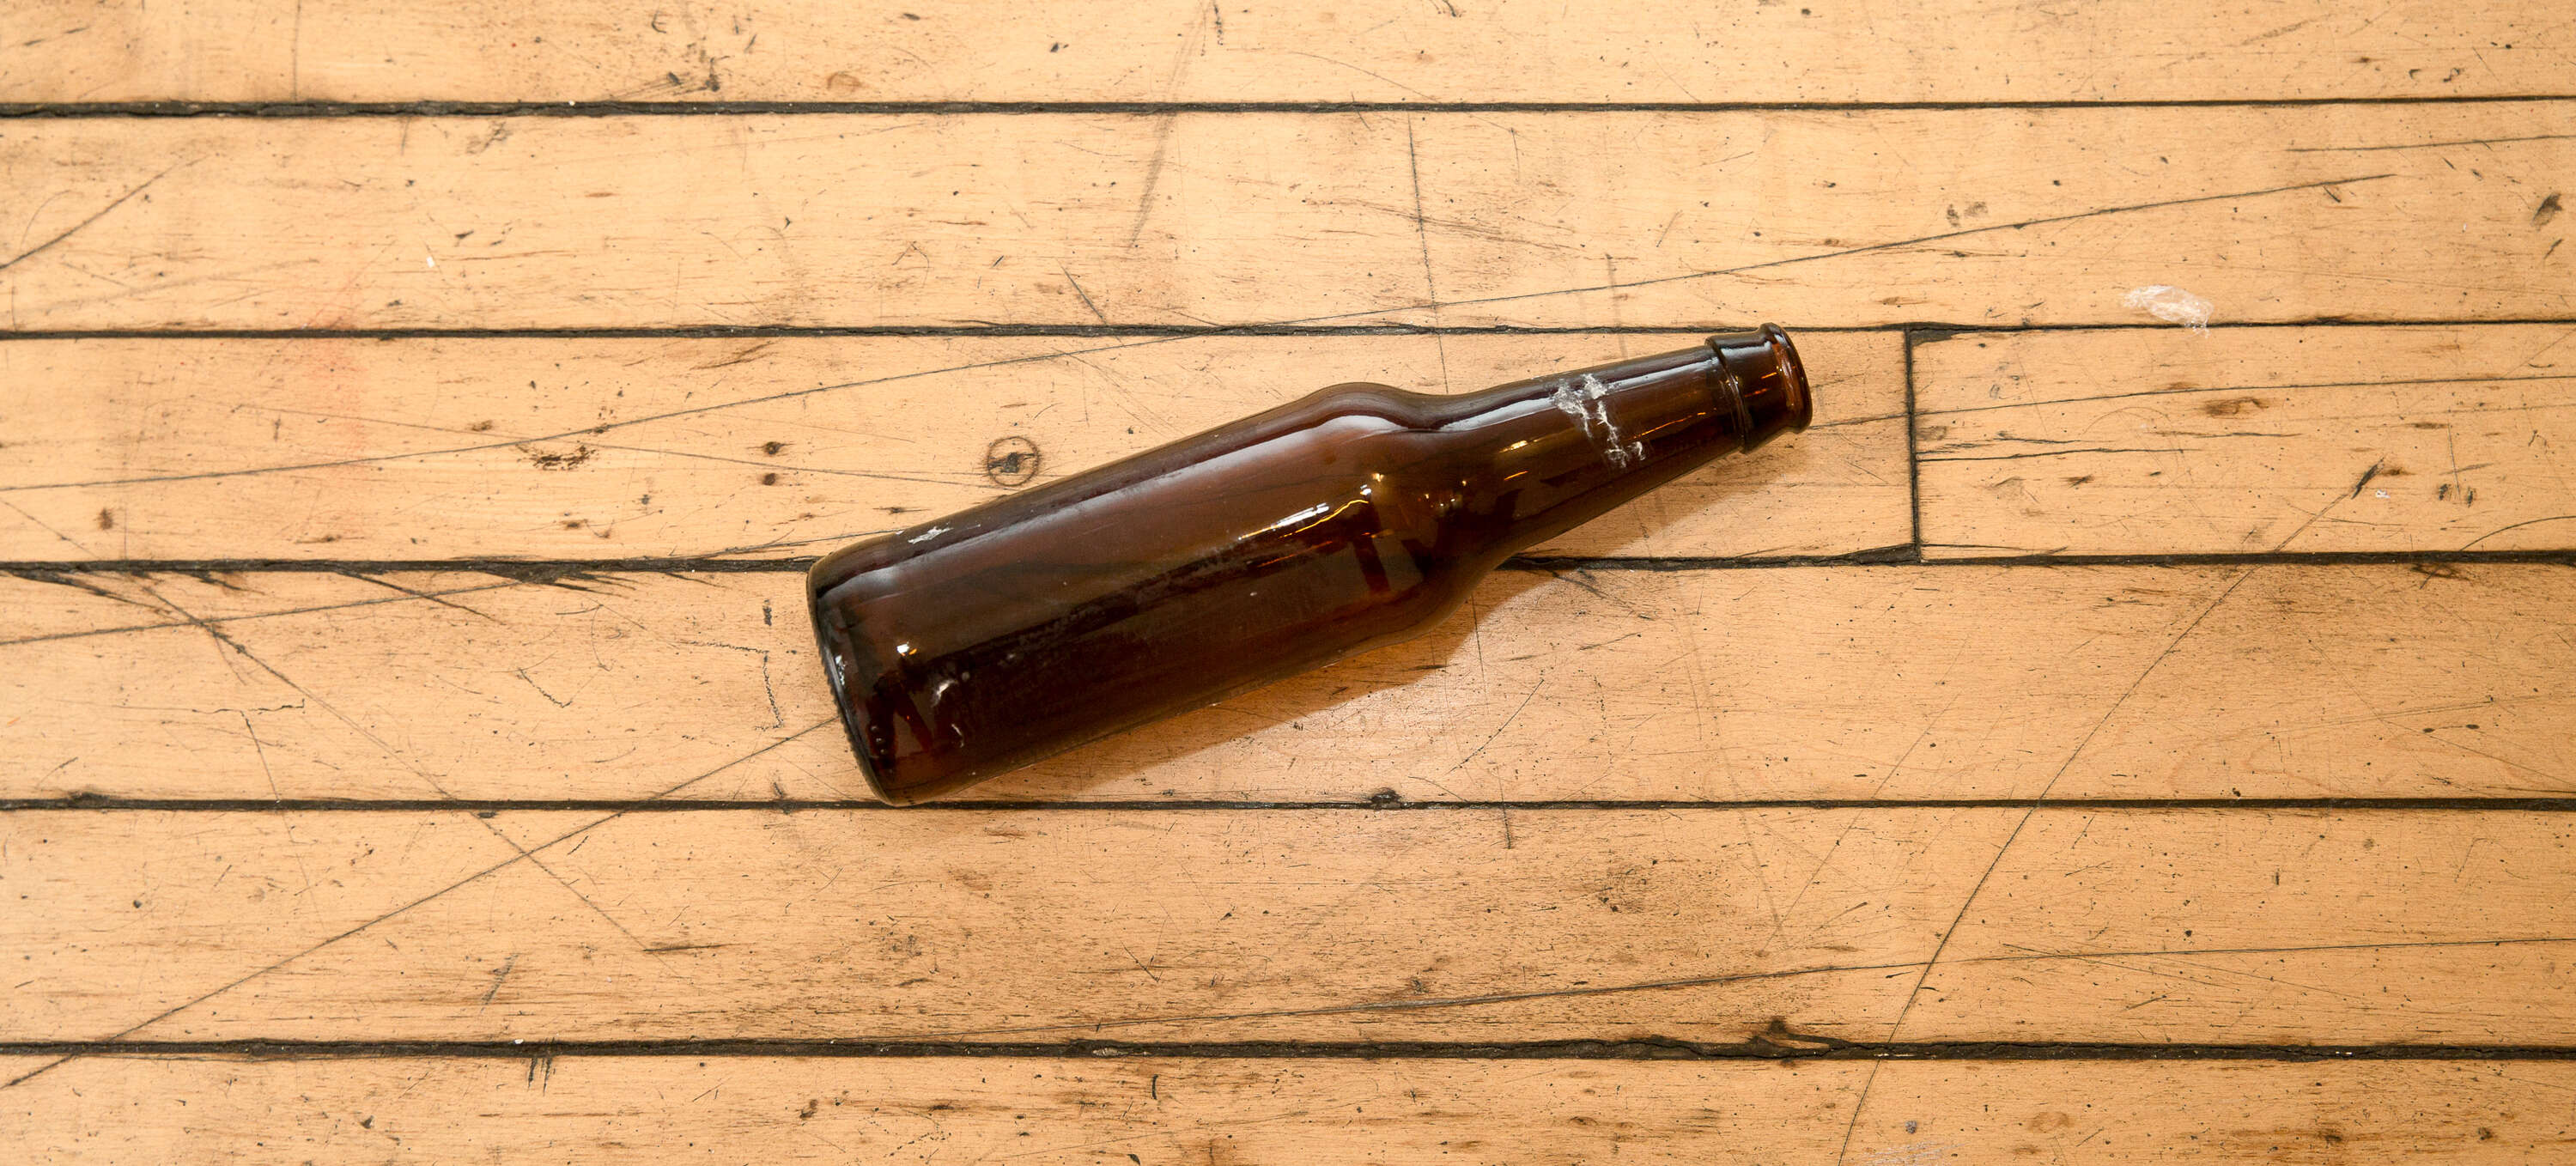 broken craft beer bottle